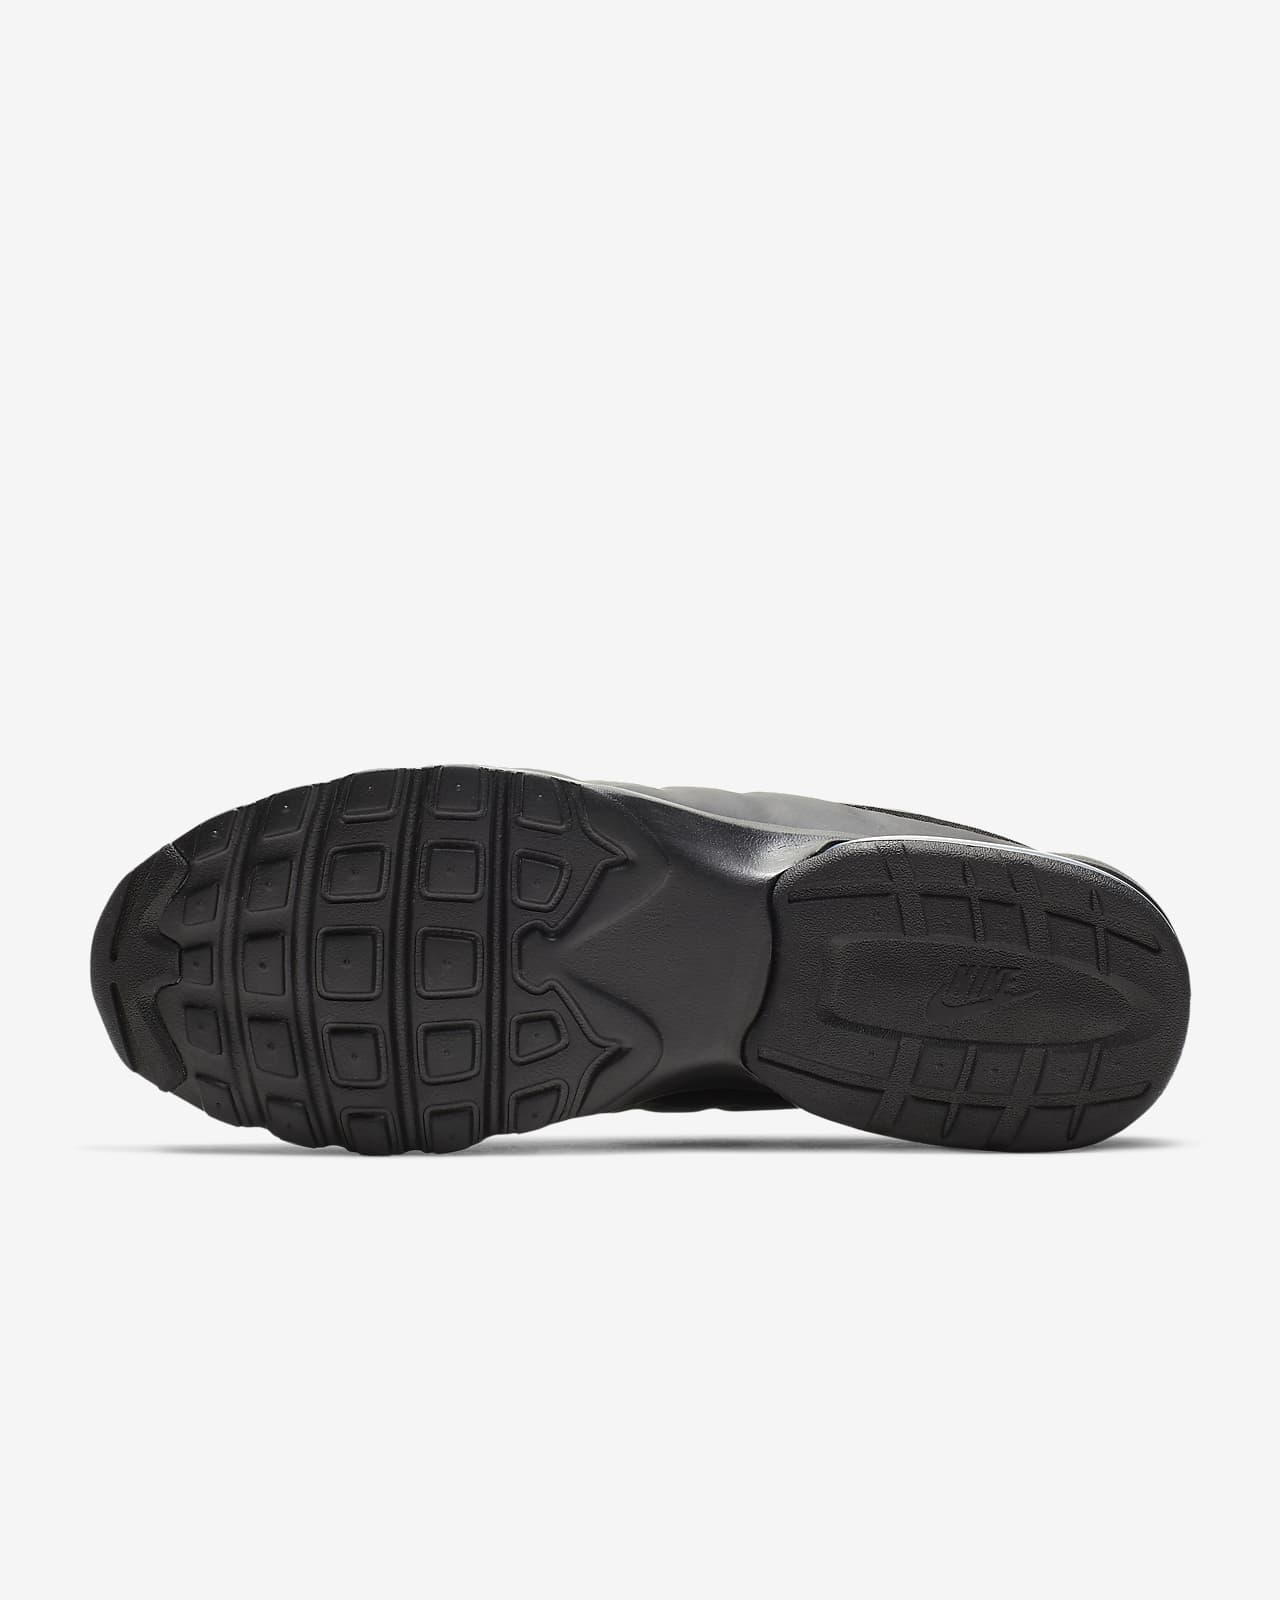 Nike Air Max Invigor Men's Shoe. Nike LU